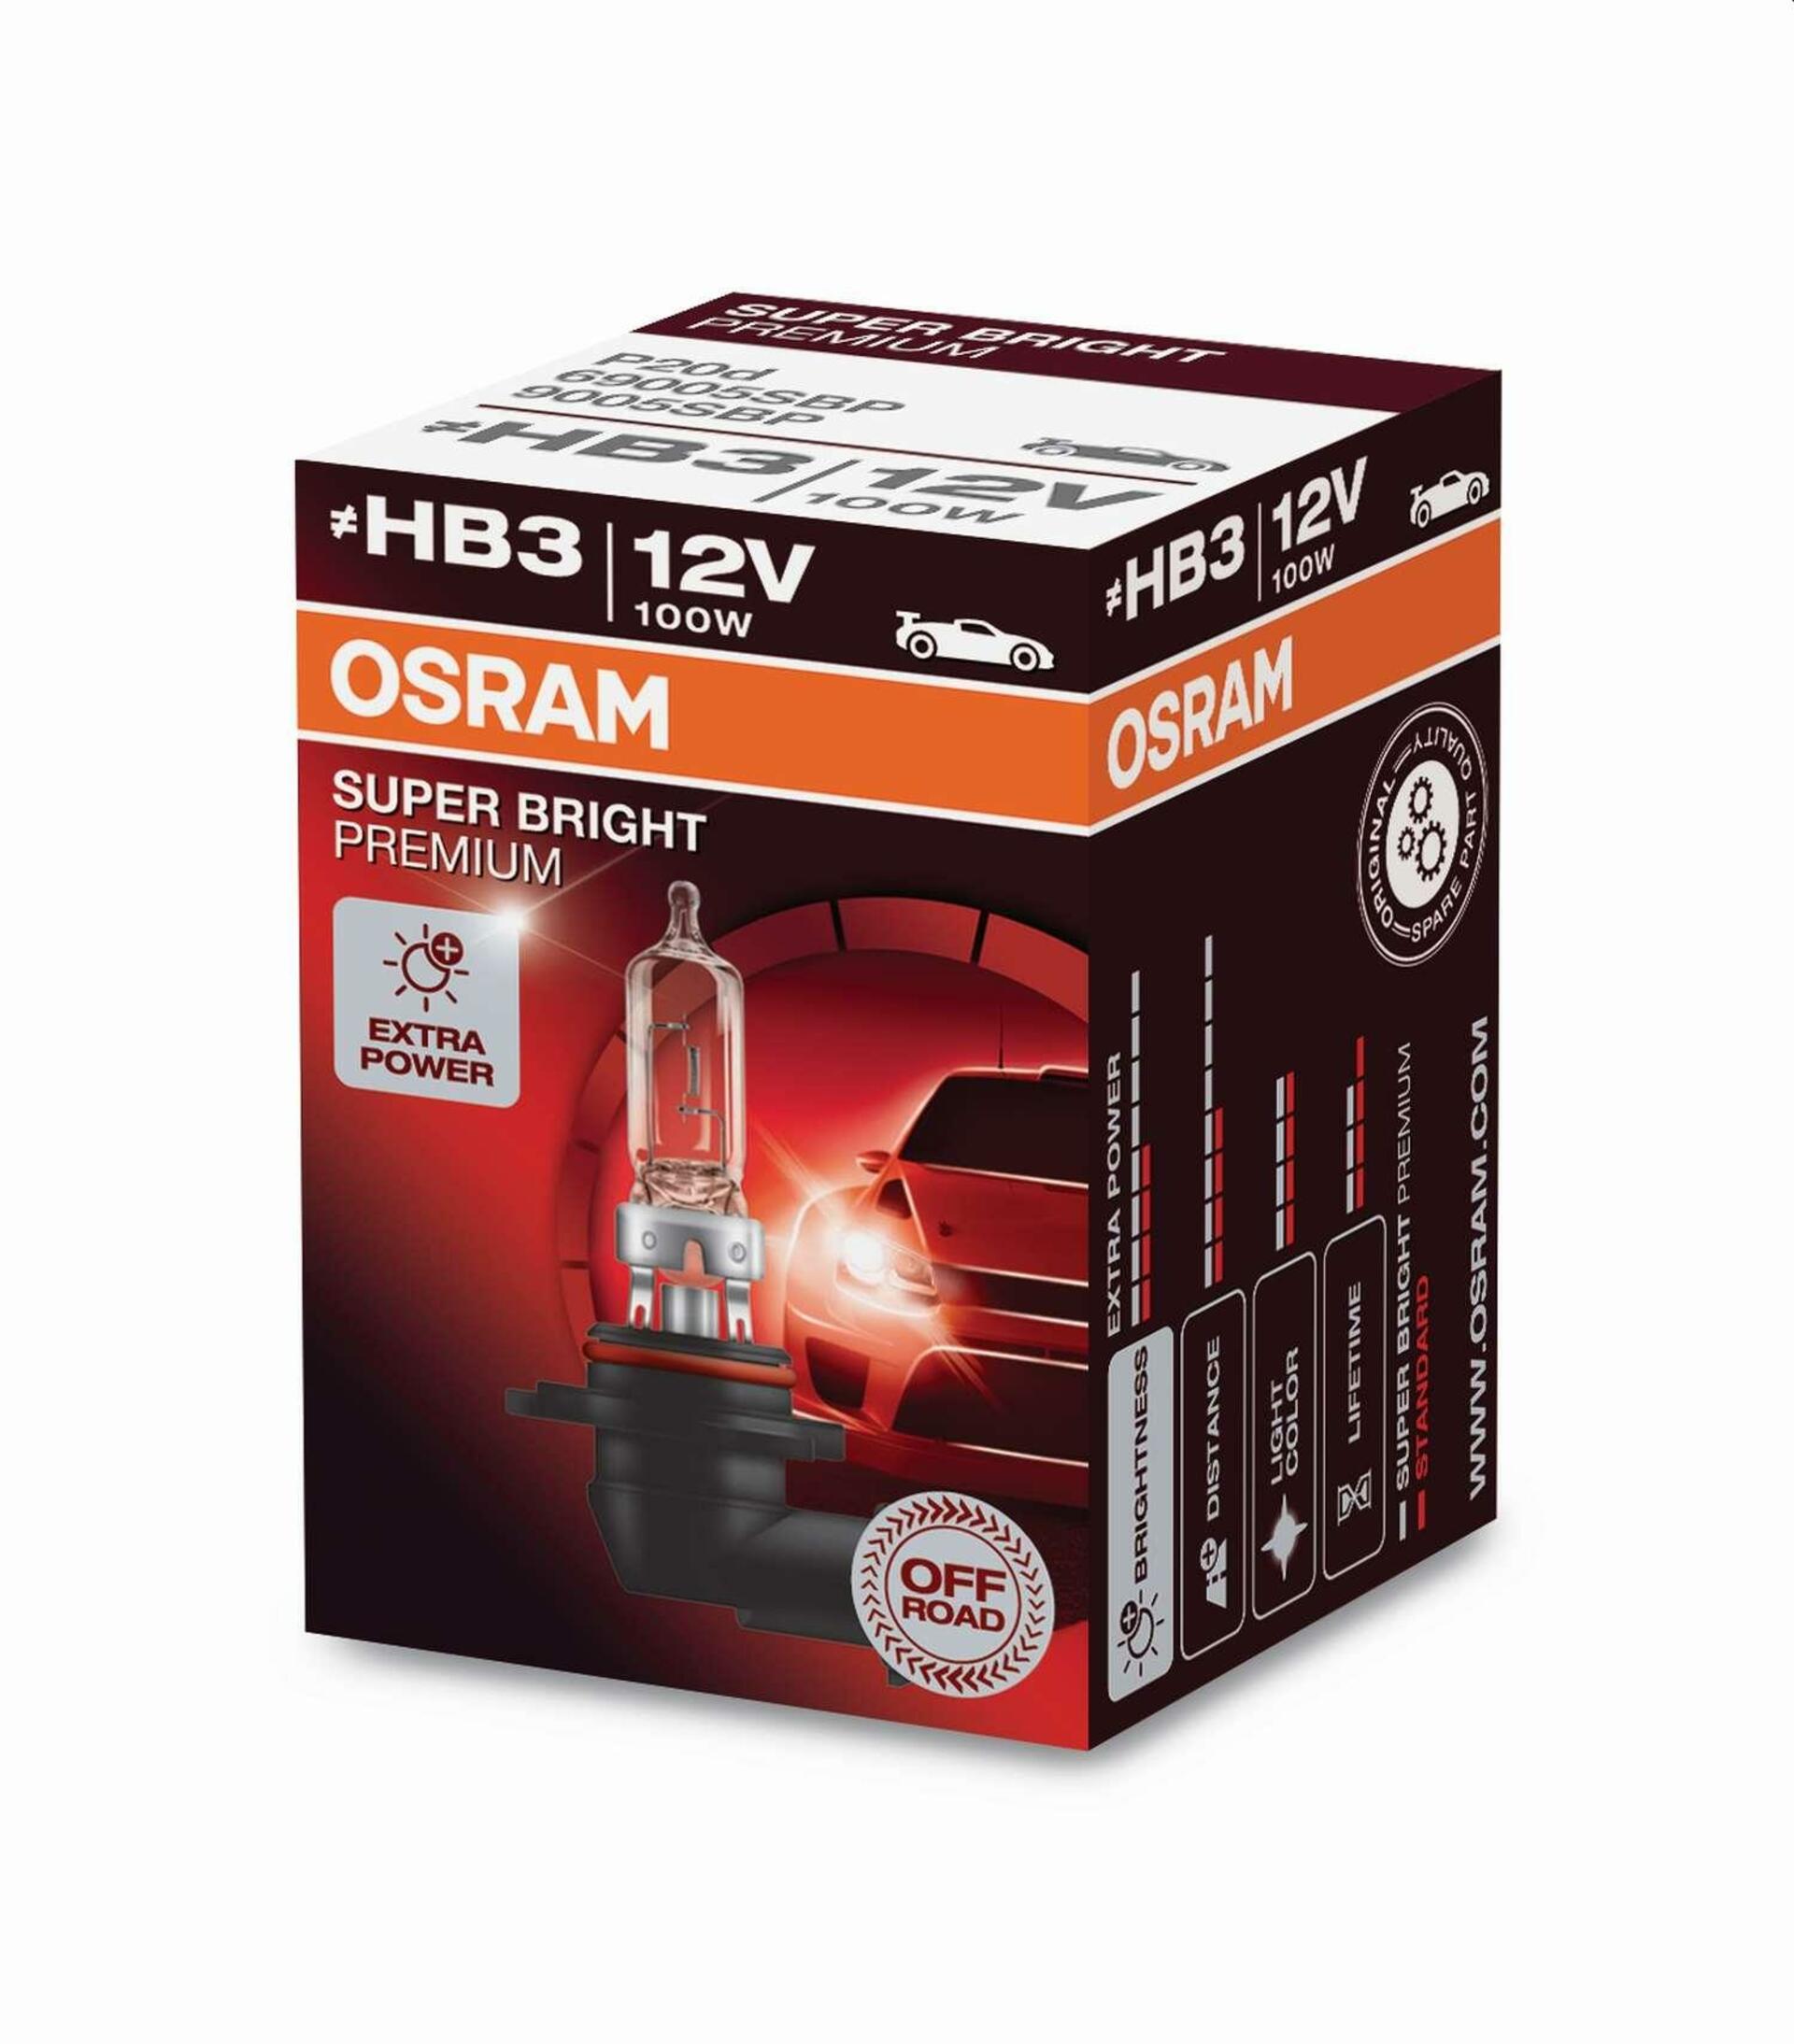 OSRAM HB3 12V 100W - SUPER BRIGHT PREMIUM OFF ROAD 69005SBP